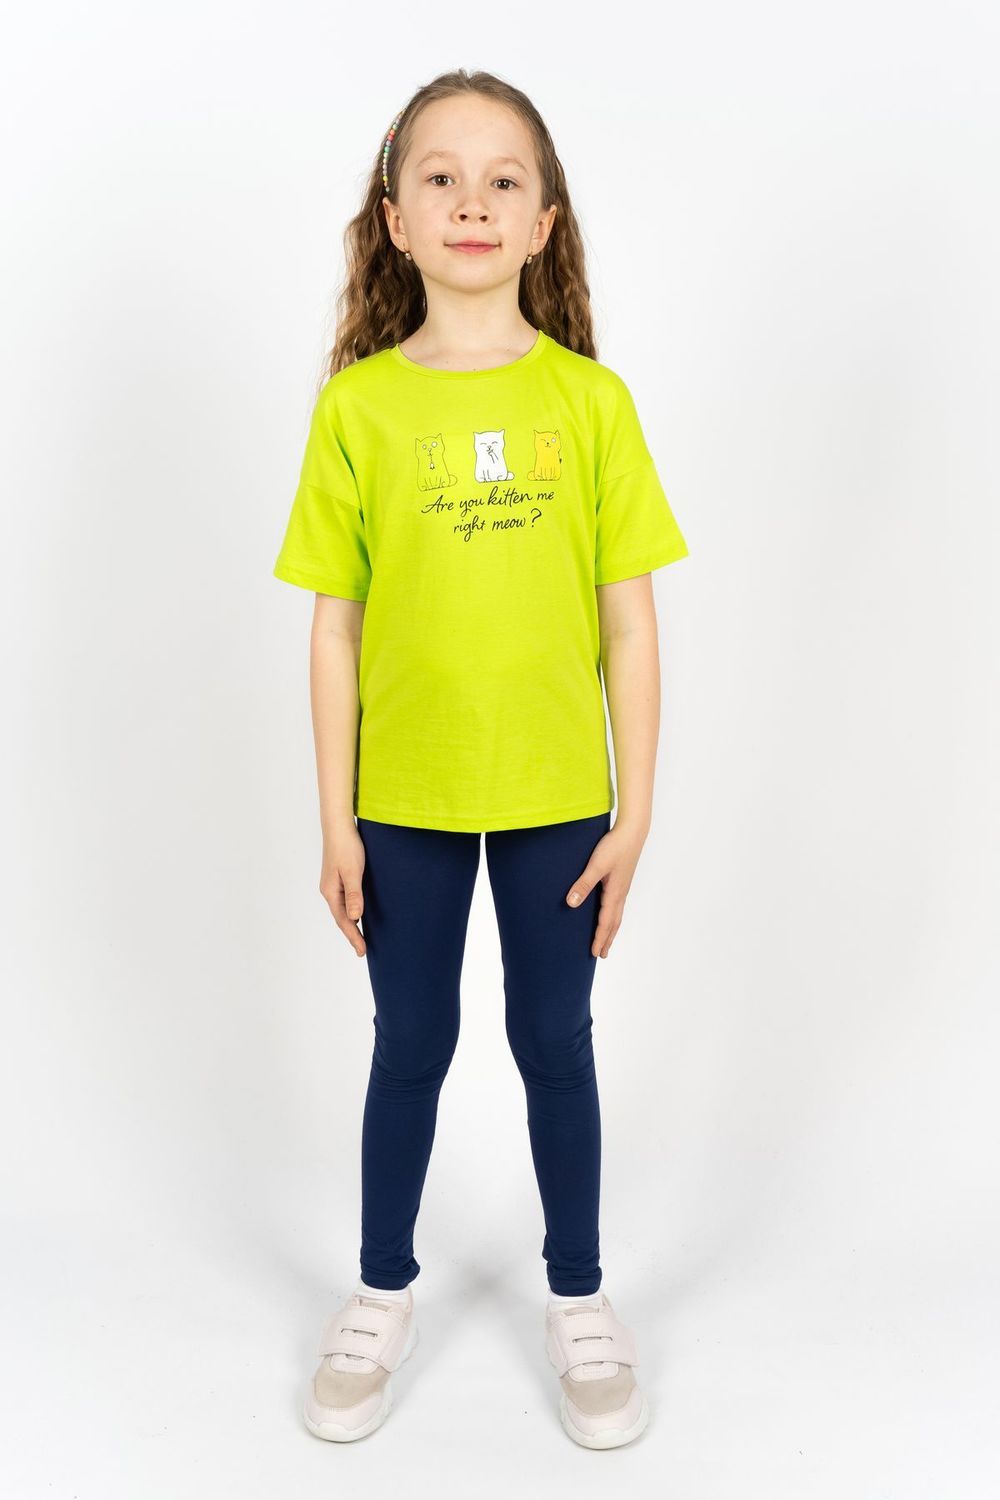 Комплект для девочки 41103 (футболка+лосины) - салатовый/синий